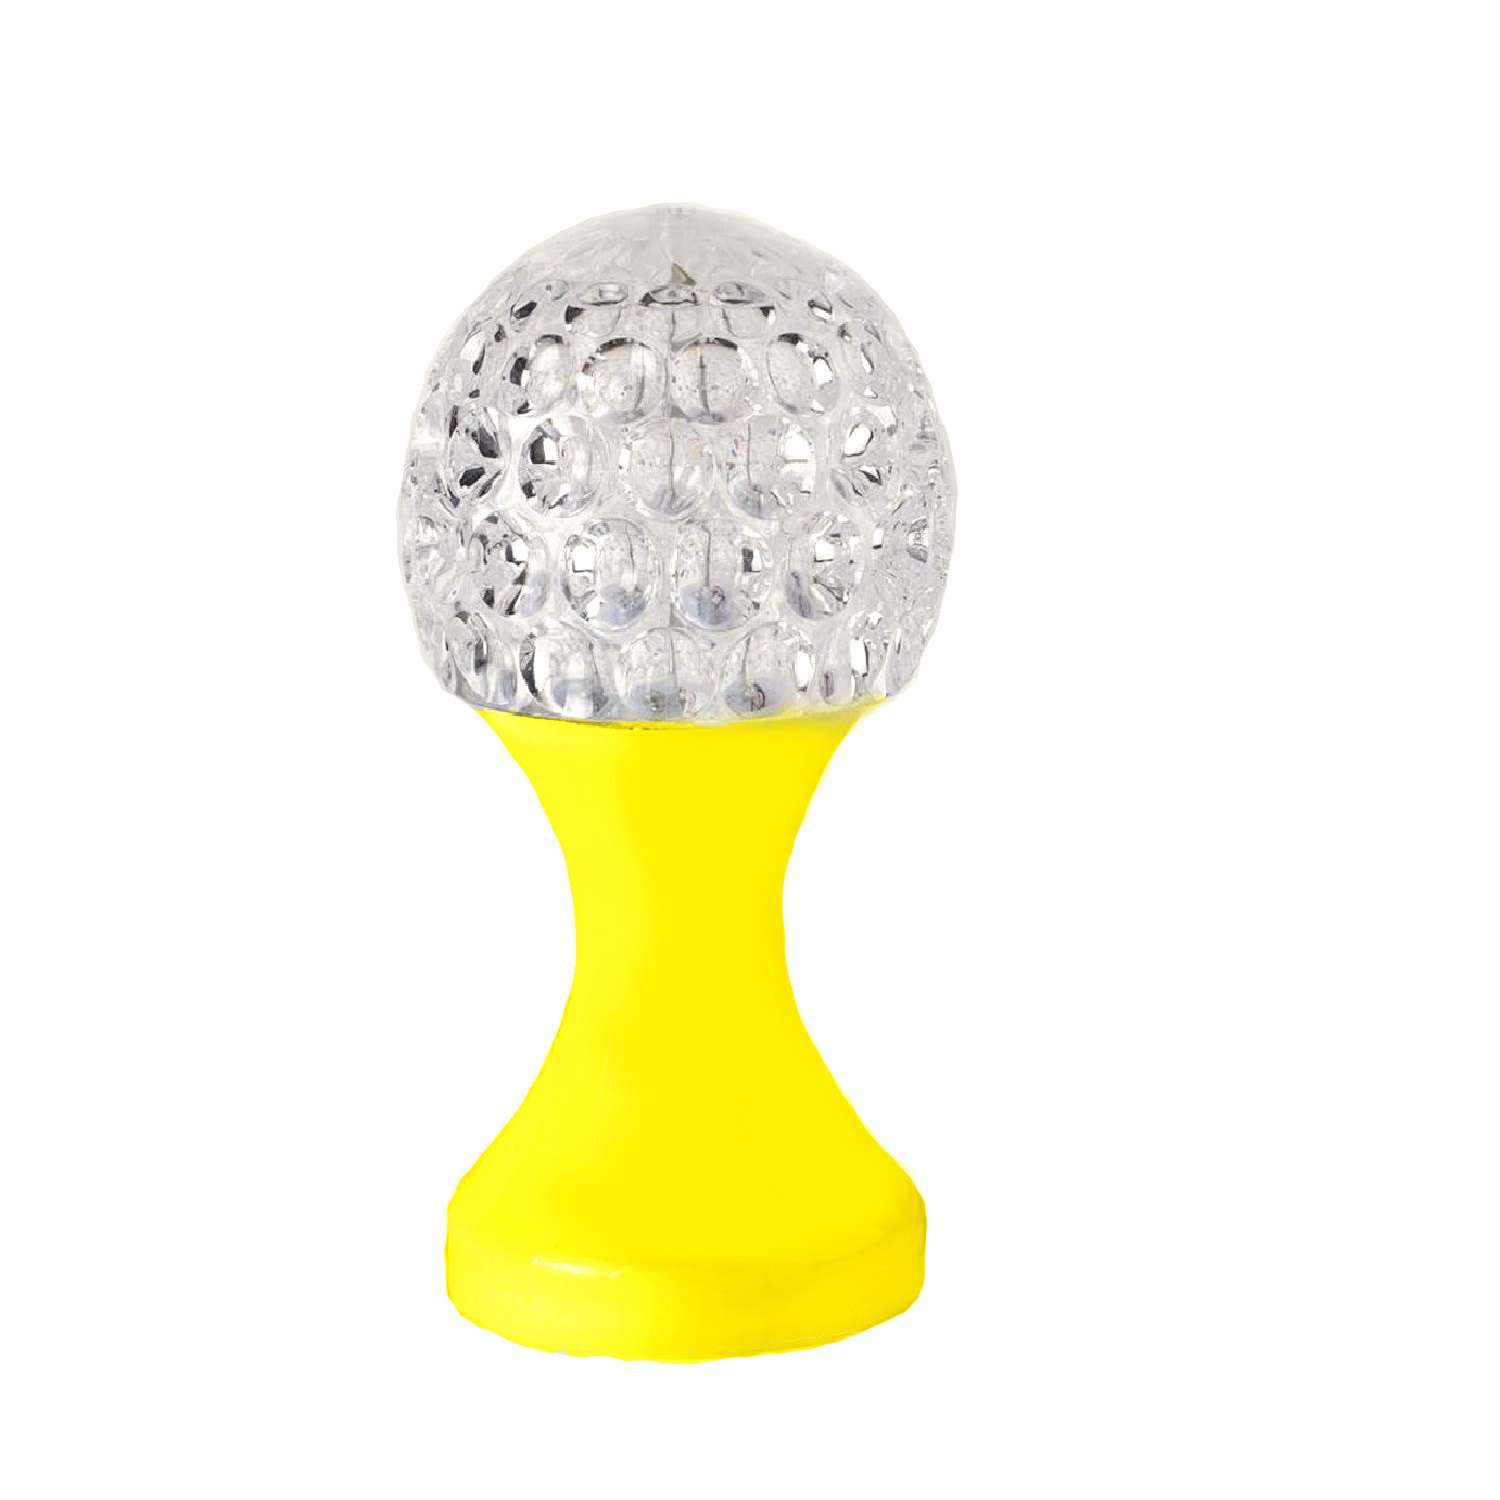 Ночник Uniglodis Кубок хрустальный шар жёлтая подставка - фото 2